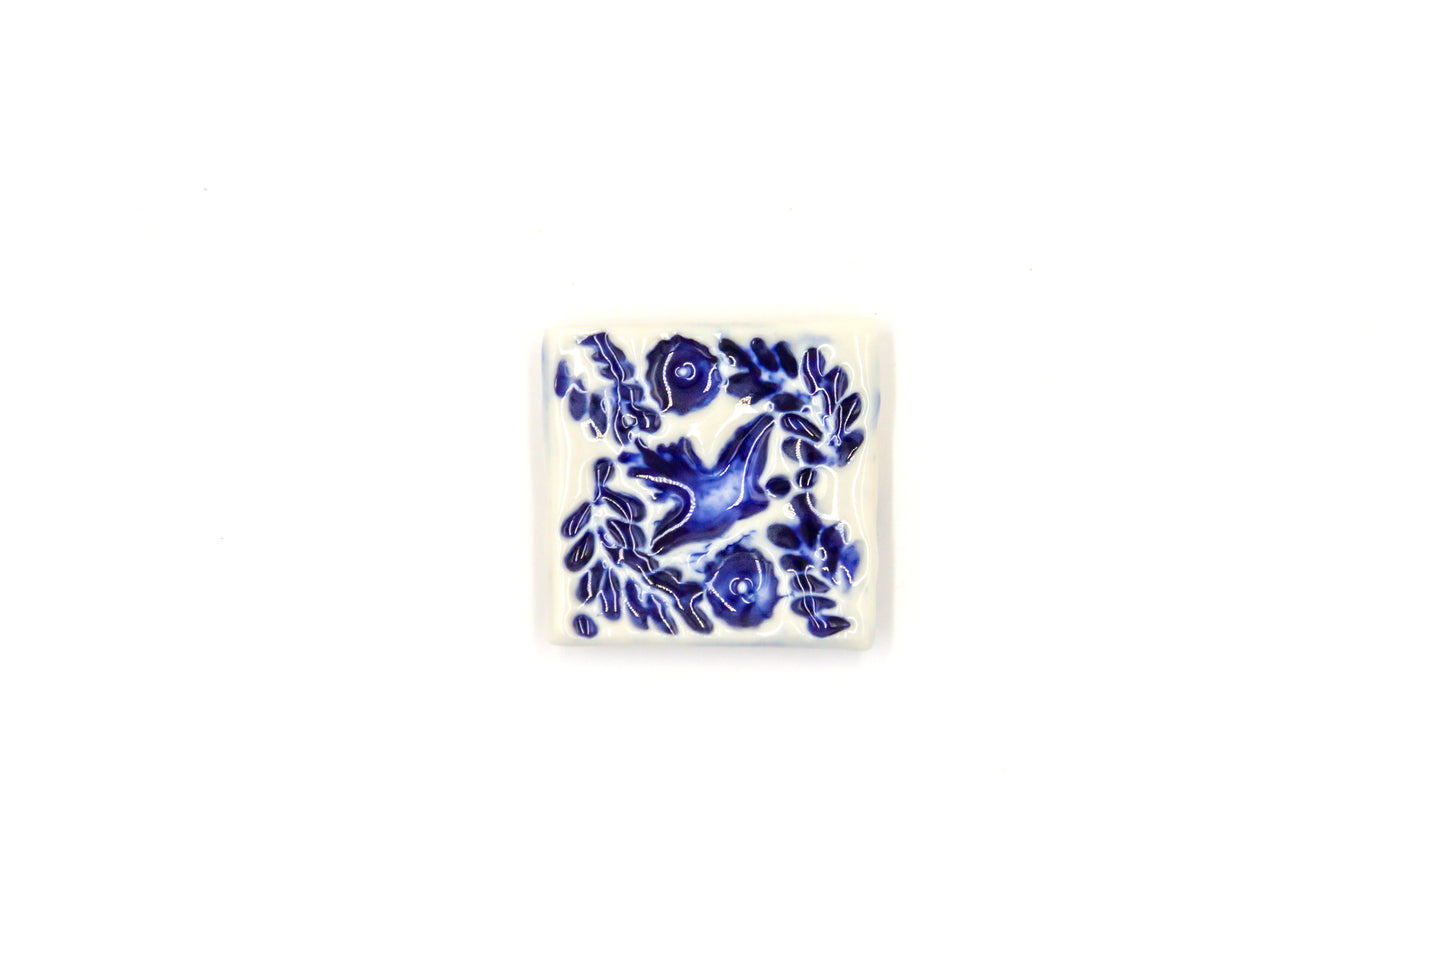 Kafelki magnesy porcelanowe w stylu azulejos